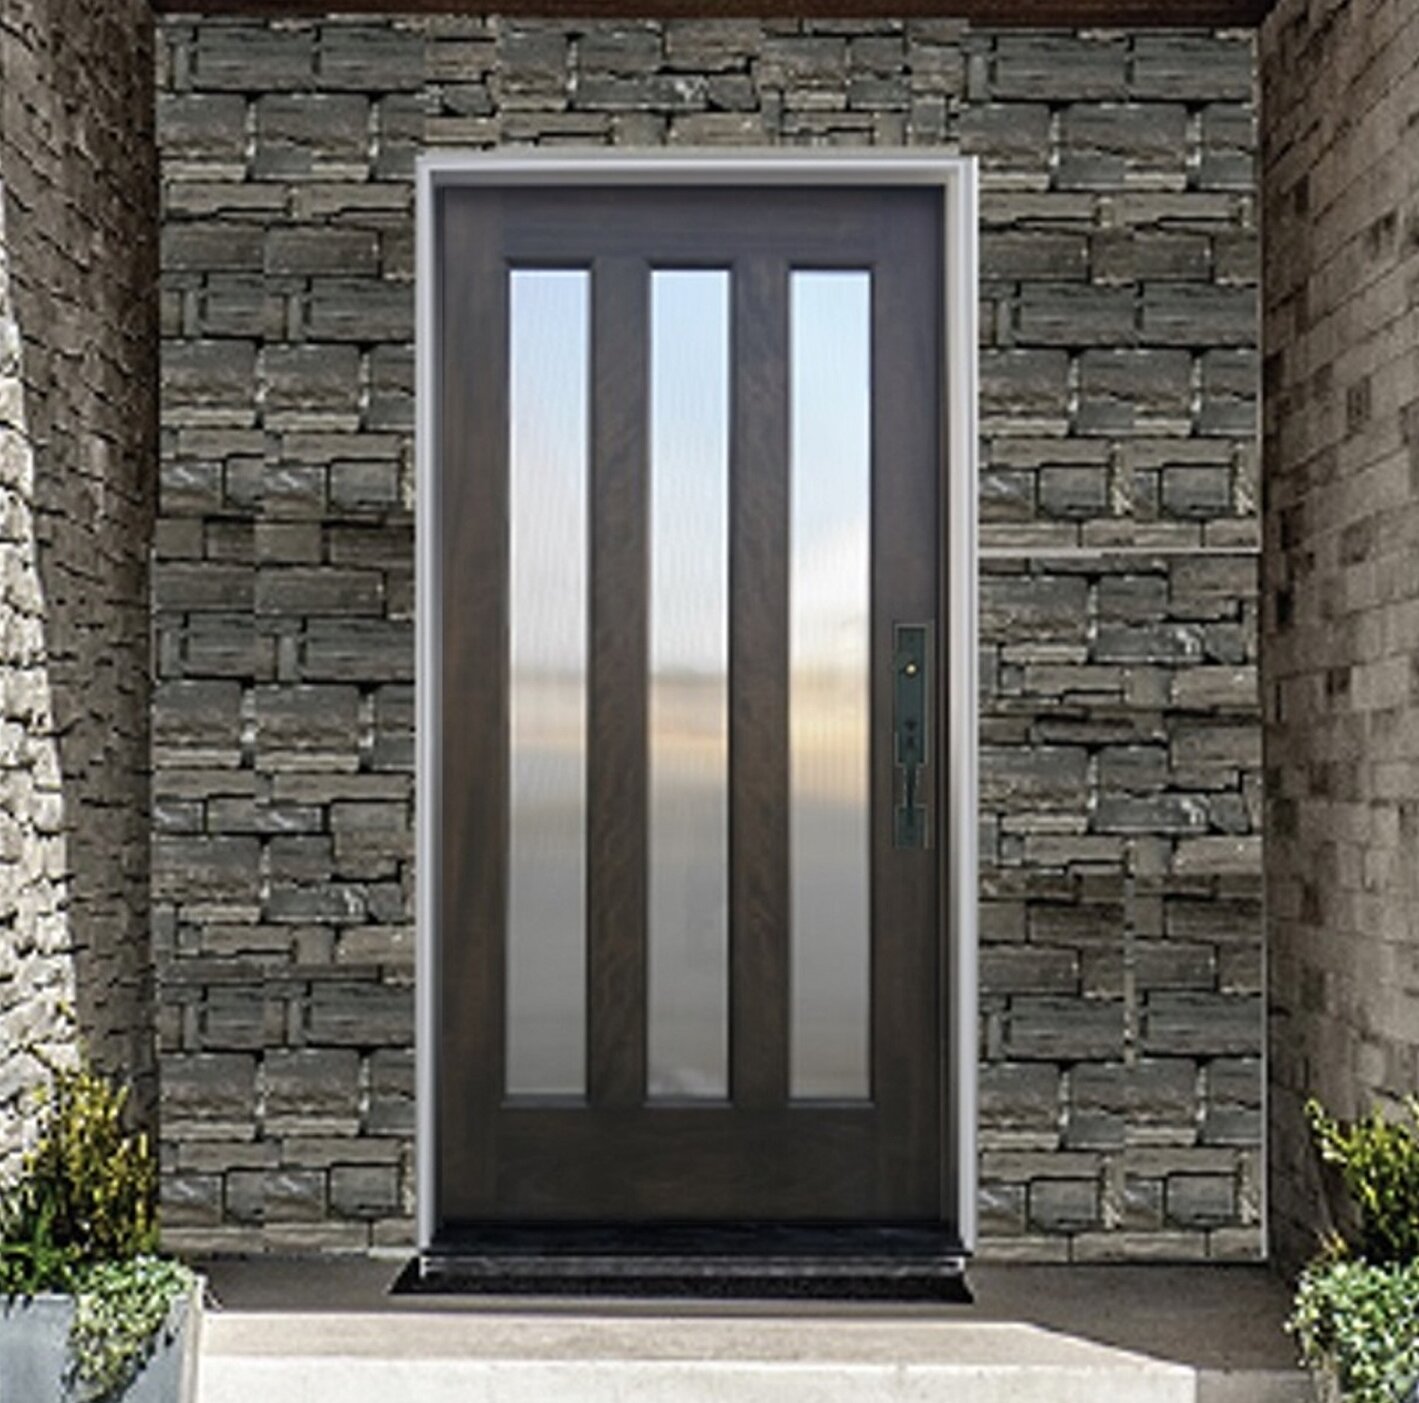 https://assets.wfcdn.com/im/59012507/compr-r85/1611/161171428/36-x-80-glass-wood-front-entry-doors.jpg